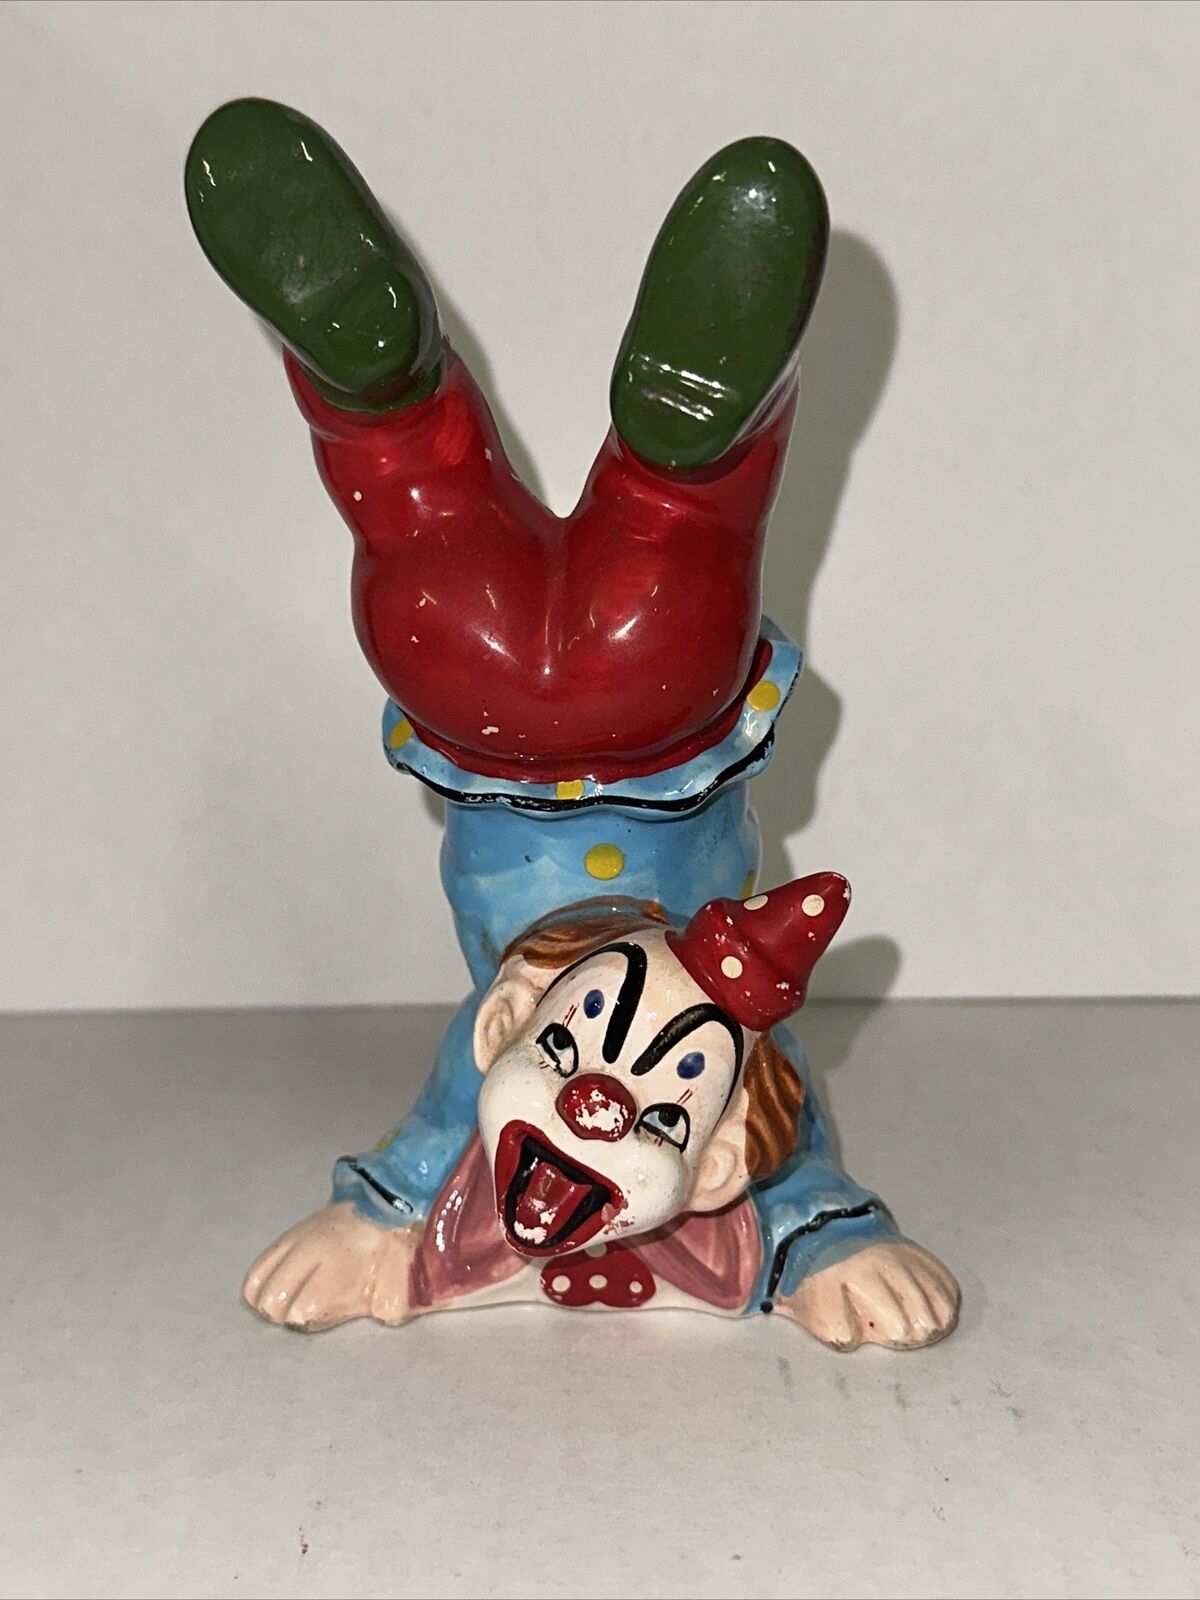 Vintage Hand Painted Souvenir Upside Down Handstand Clown UCAGCO Ceramics Japan